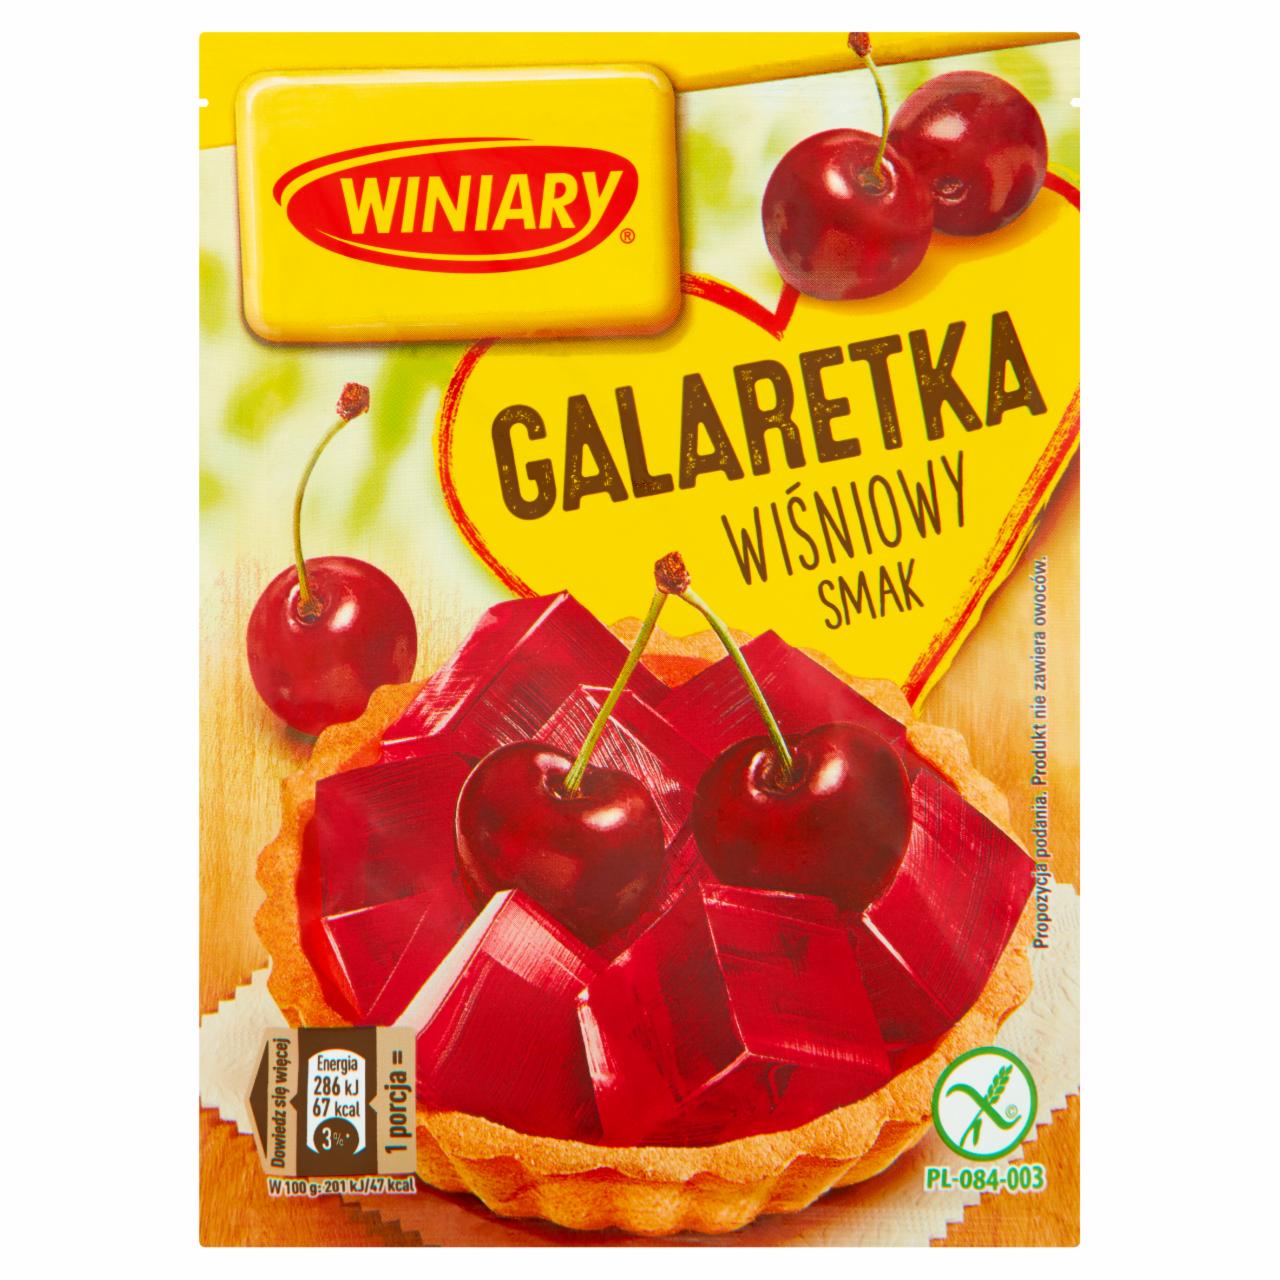 Zdjęcia - Winiary Galaretka wiśniowy smak 71 g